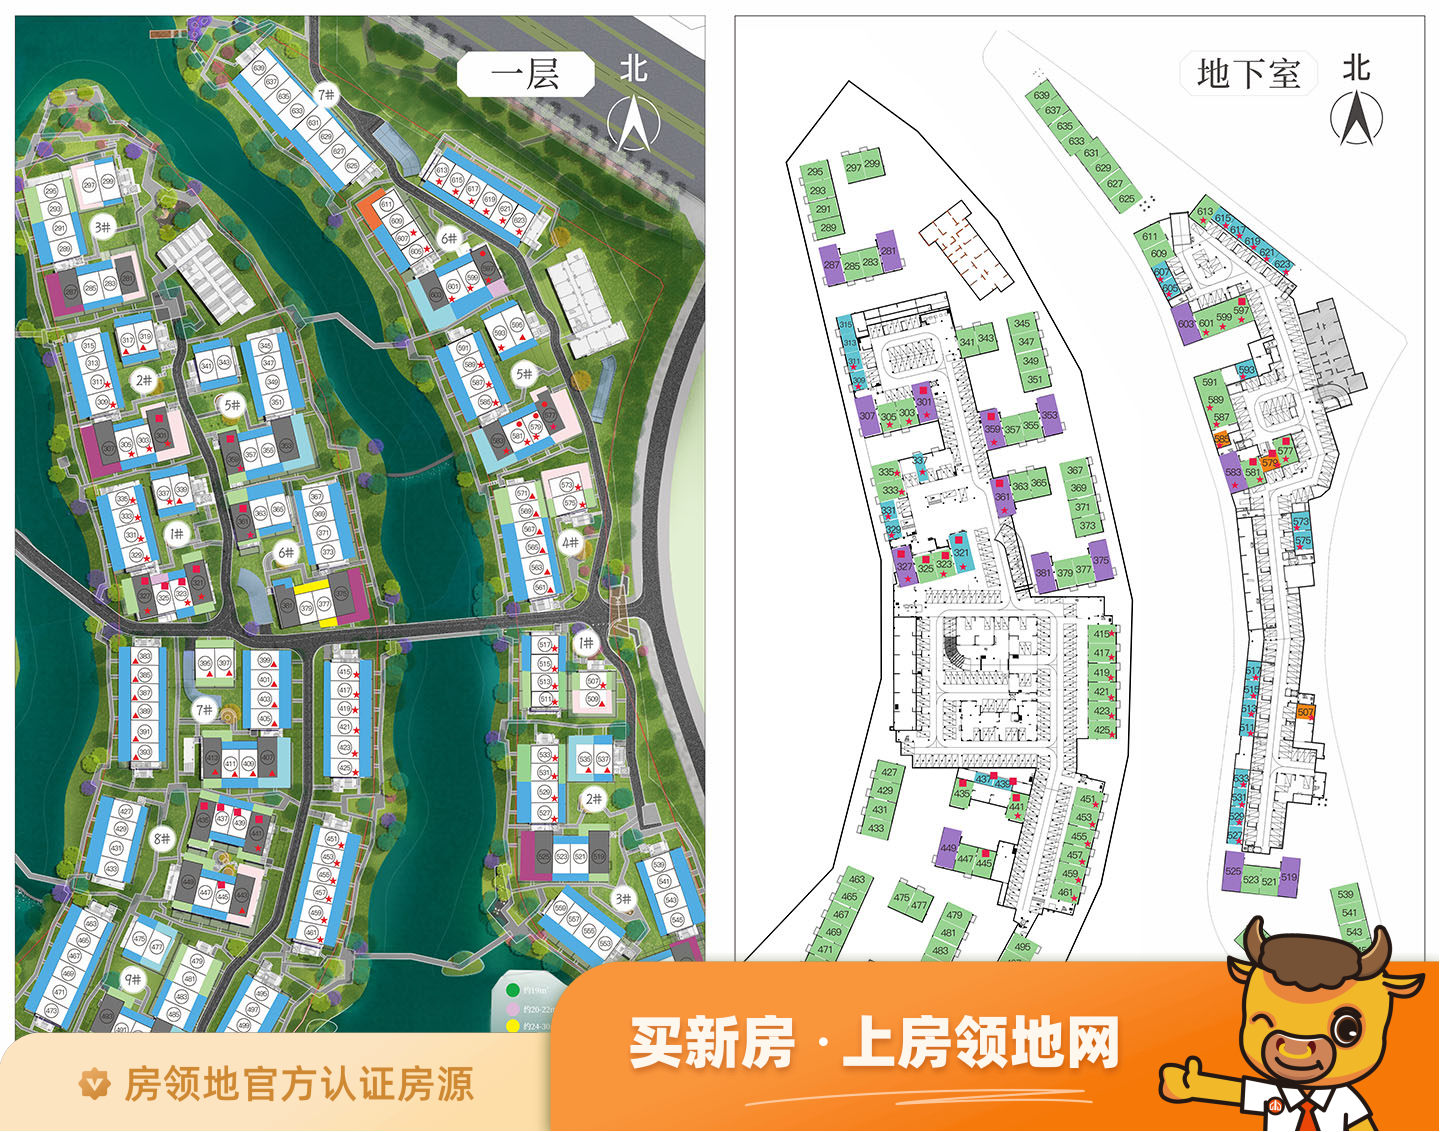 中国邛海17度国际旅游度假区规划图55